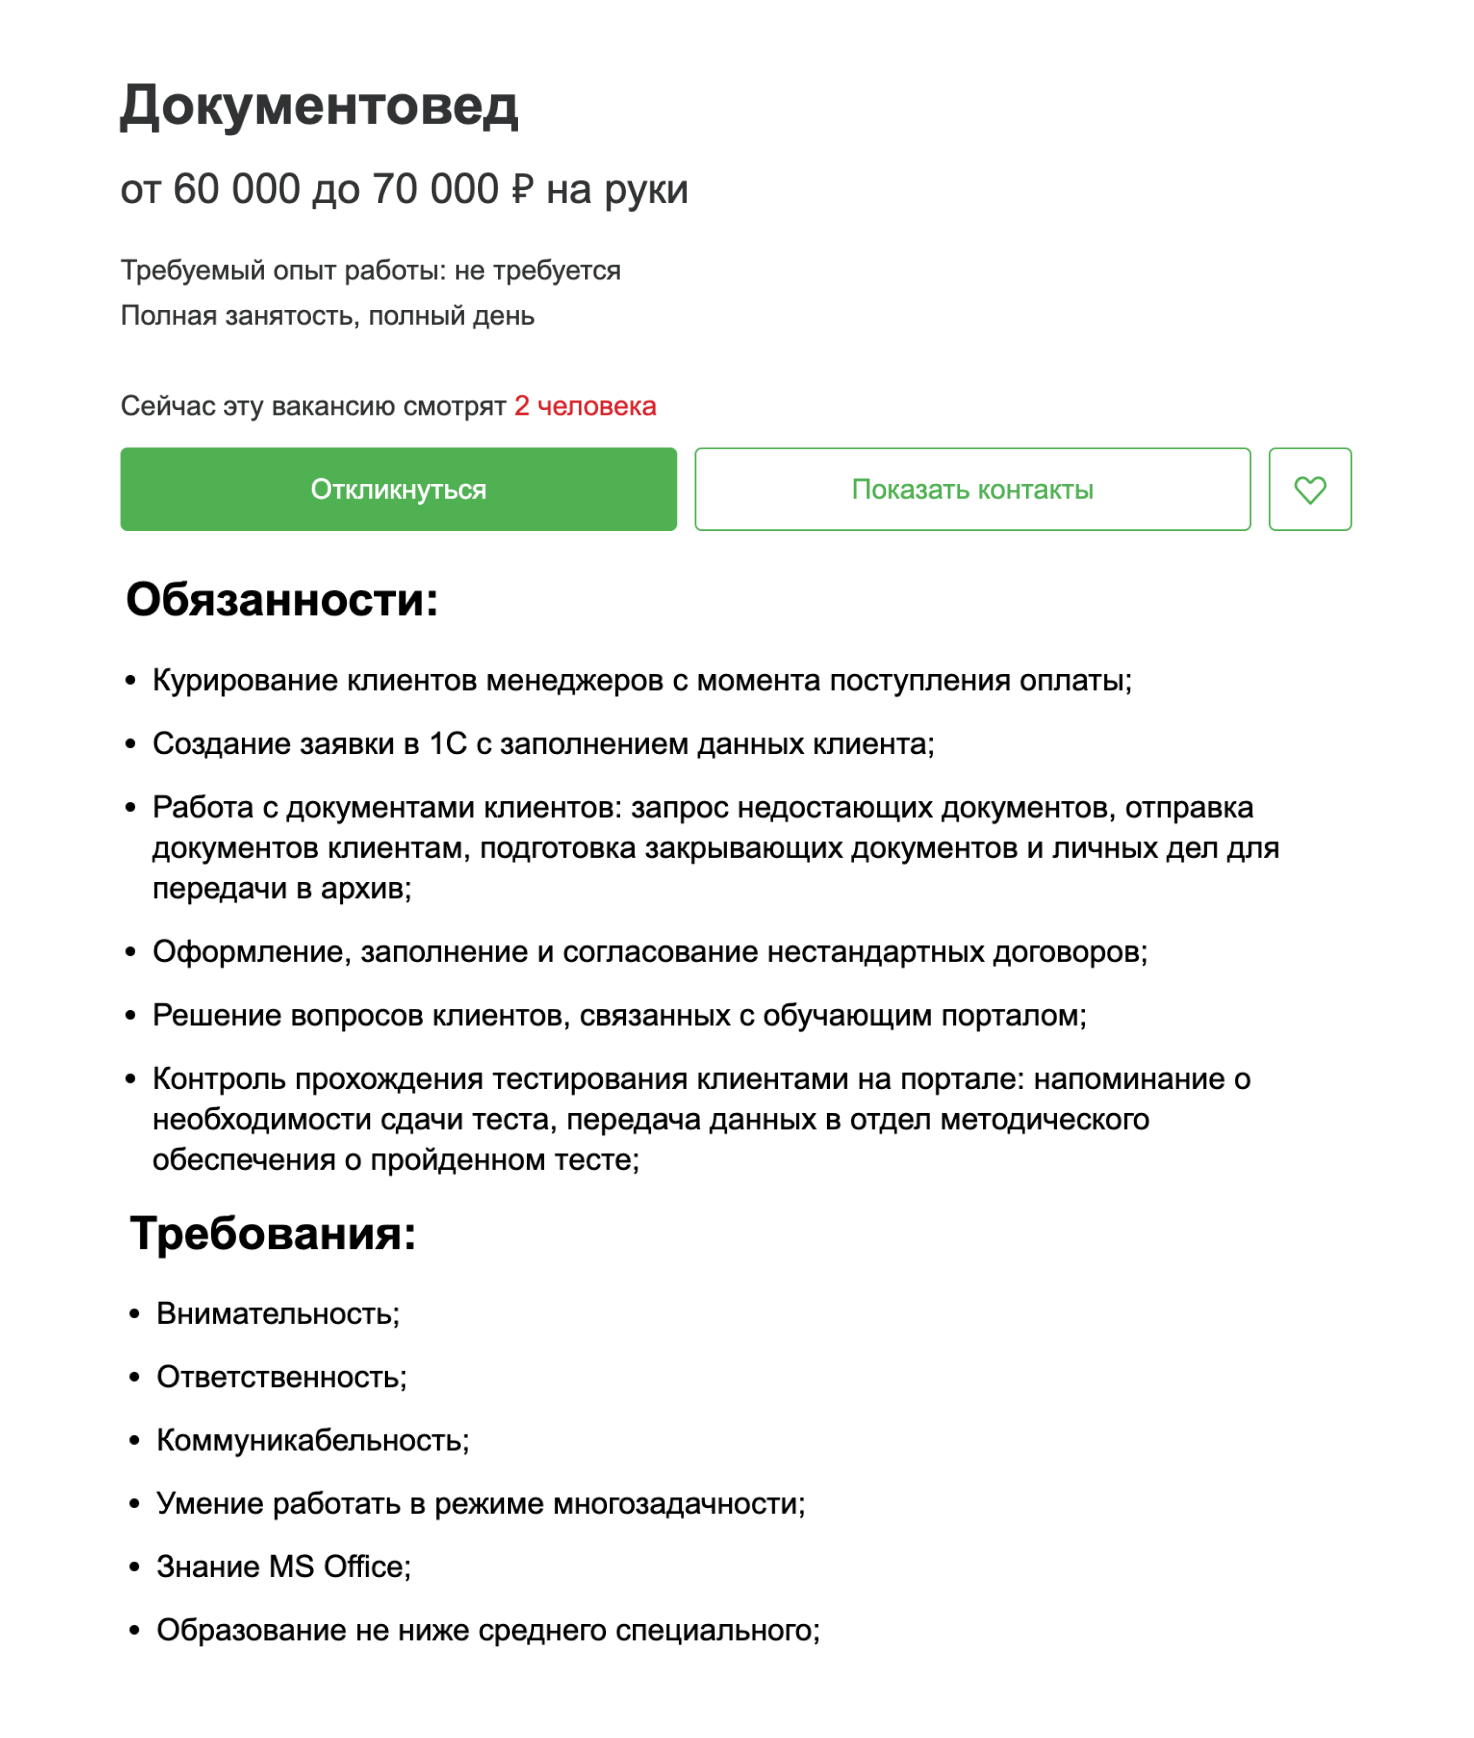 Работа документоведом предполагает уверенное владение MS Office и 1С. Источник: hh.ru